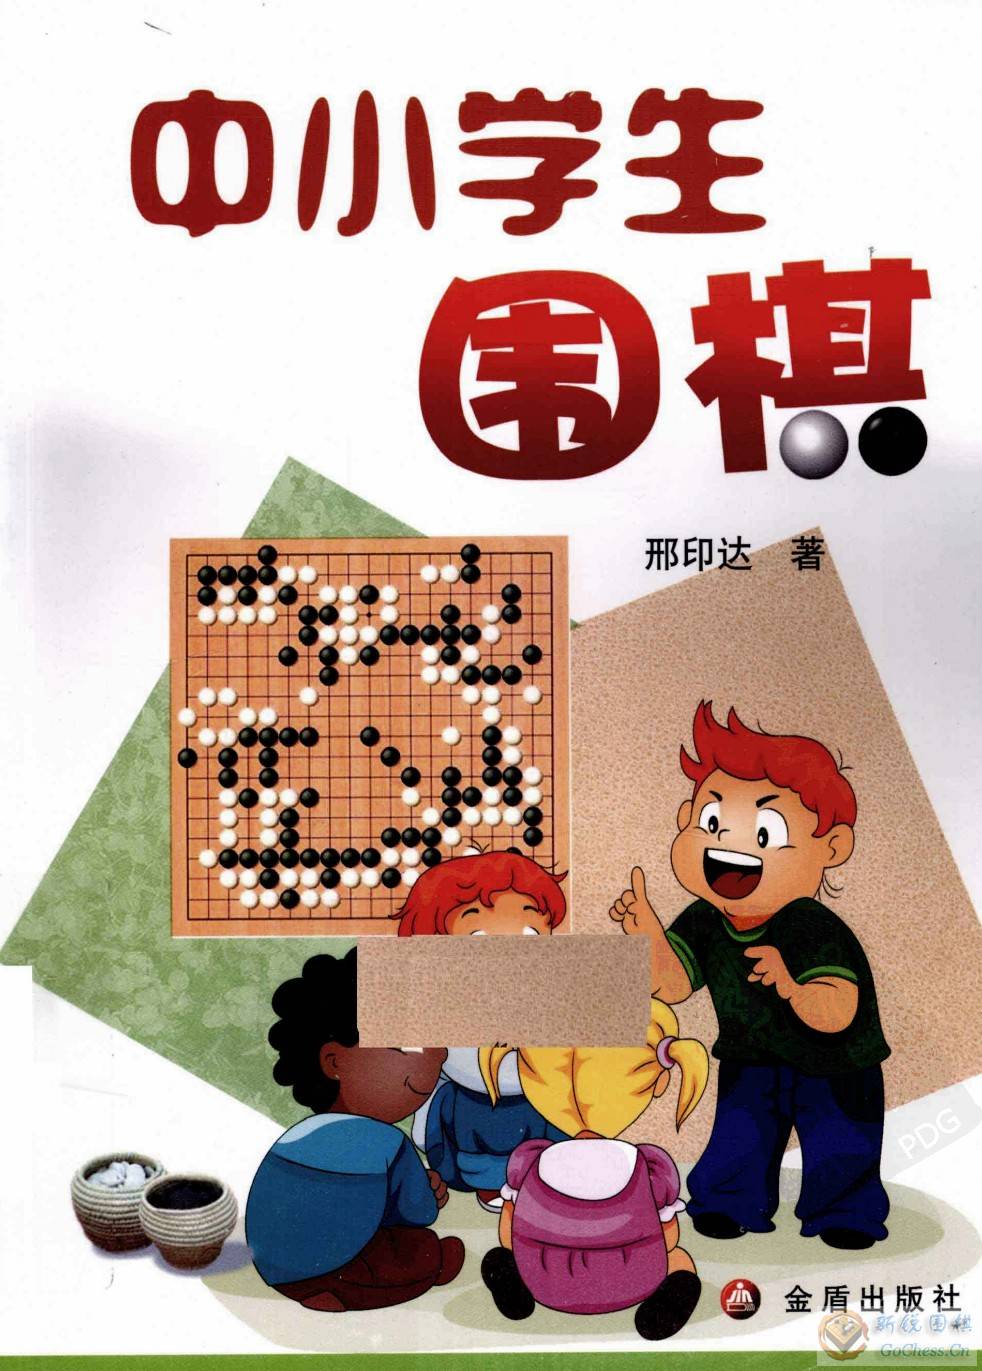 中小学生围棋cov001.jpg